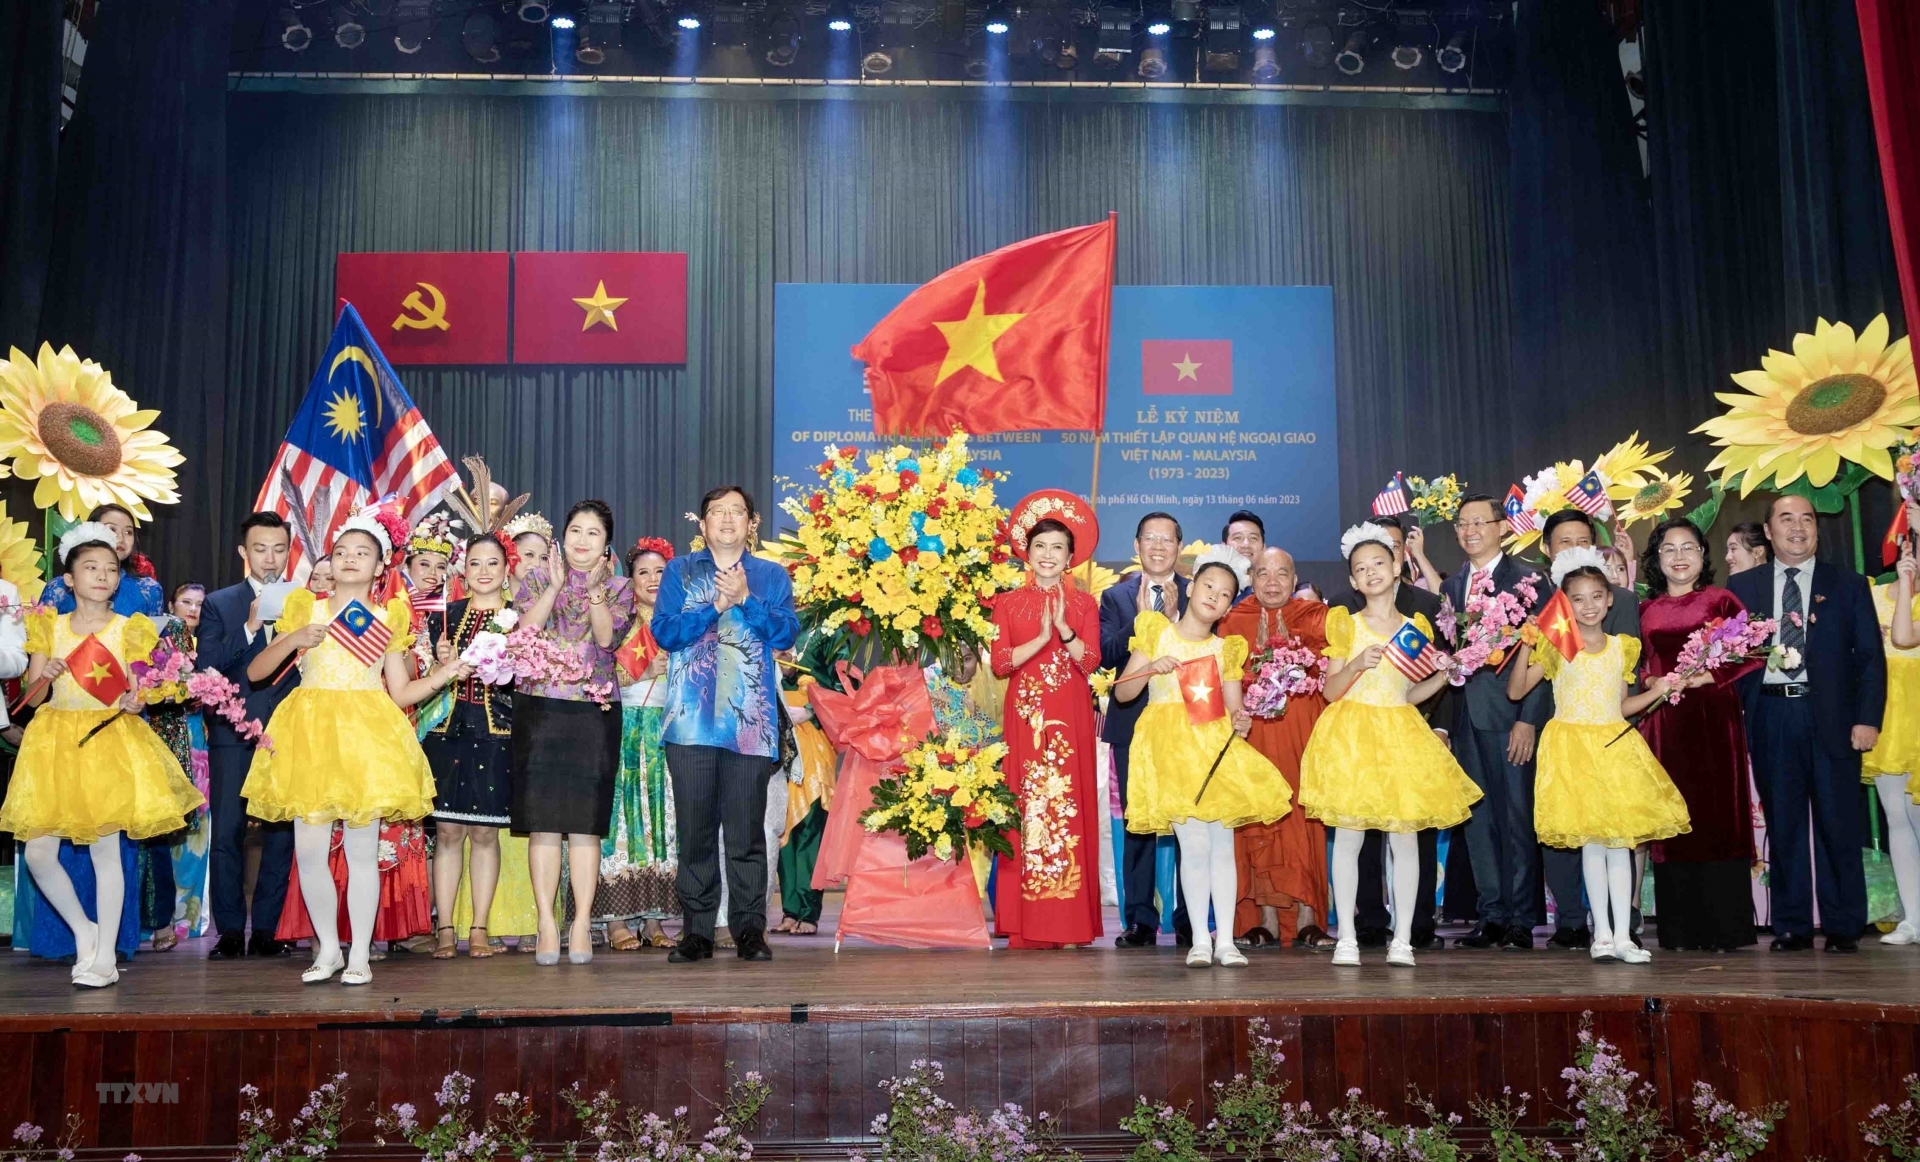 胡志明市人民委员会主席阮文买和马来西亚驻越南大使陈扬泰向在庆典上表演的艺术家们送花。